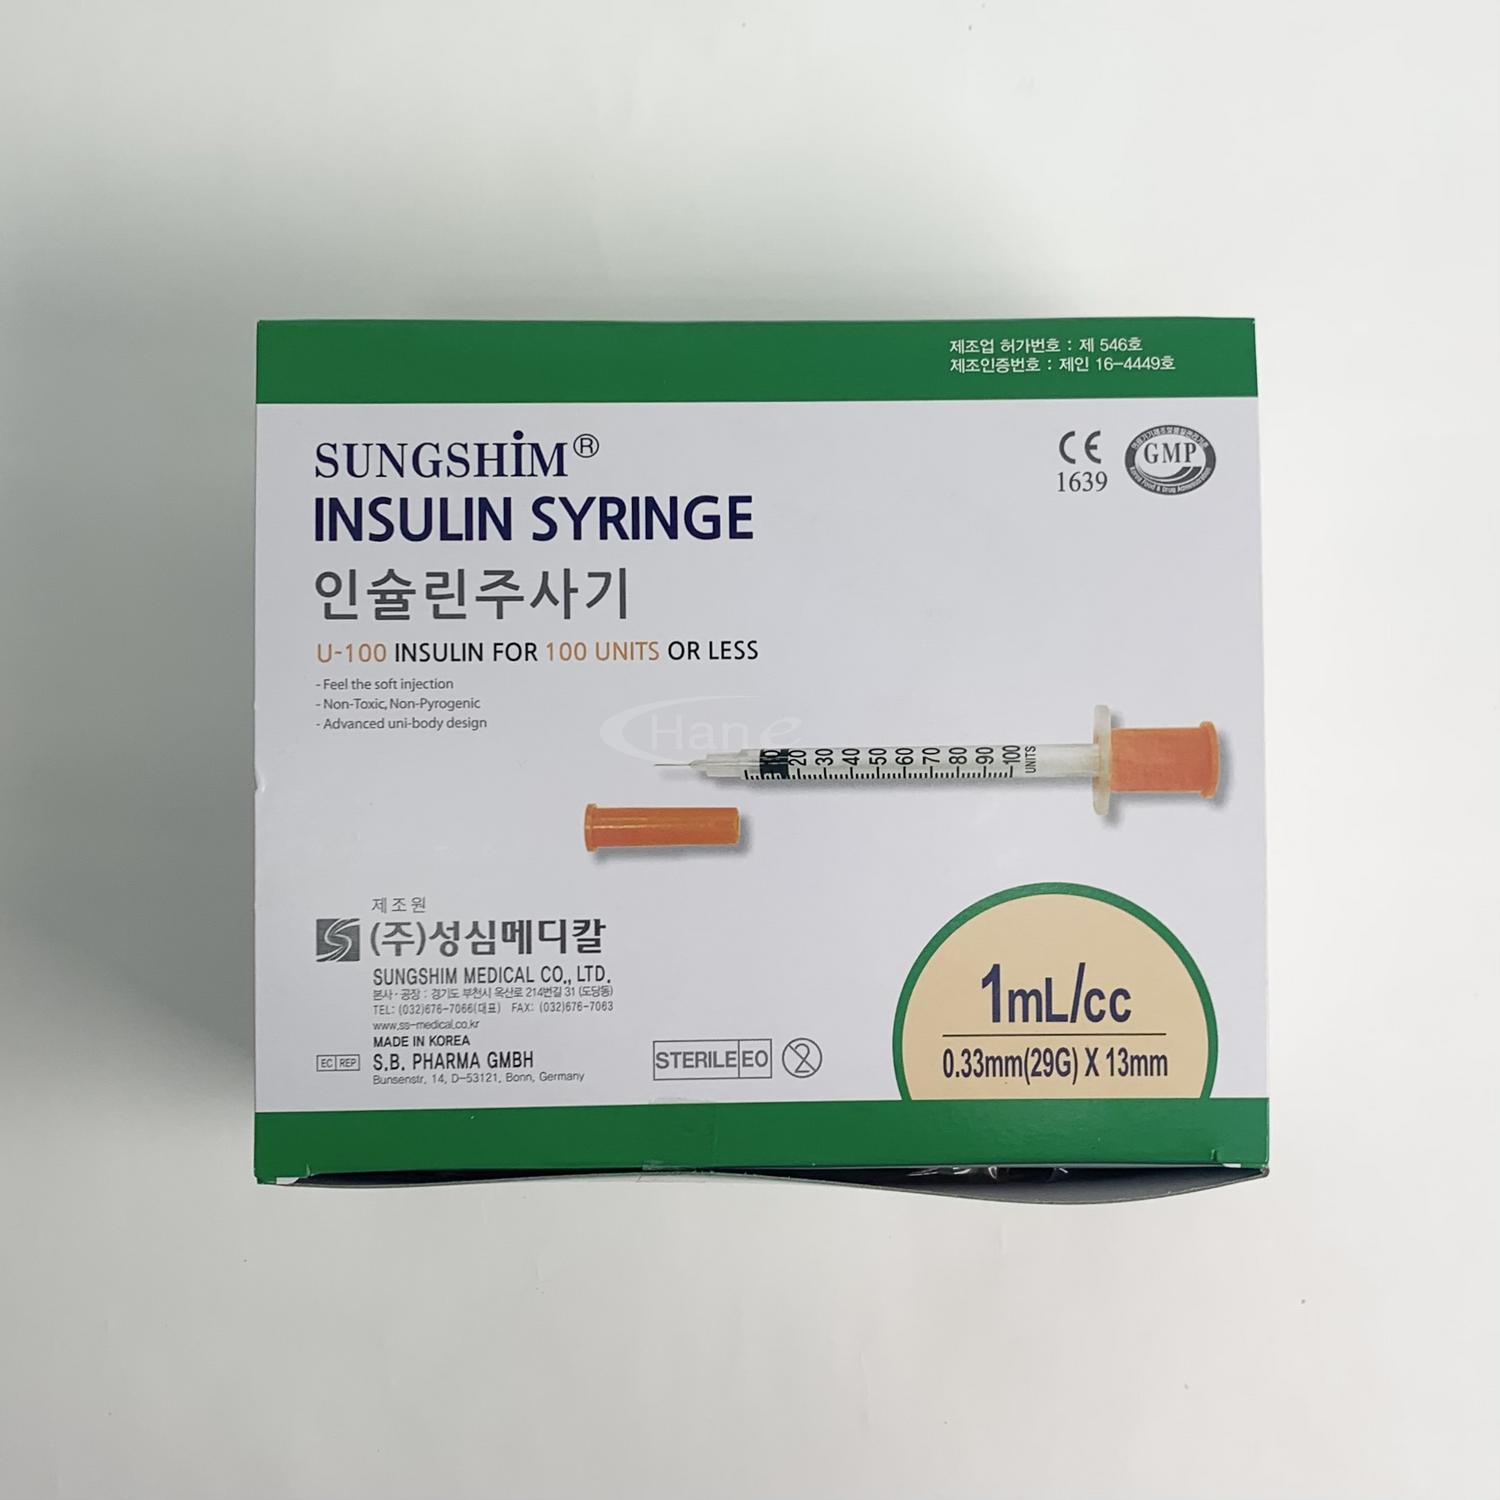 [성심]인슐린주사기 (1ml 30G*13mm)